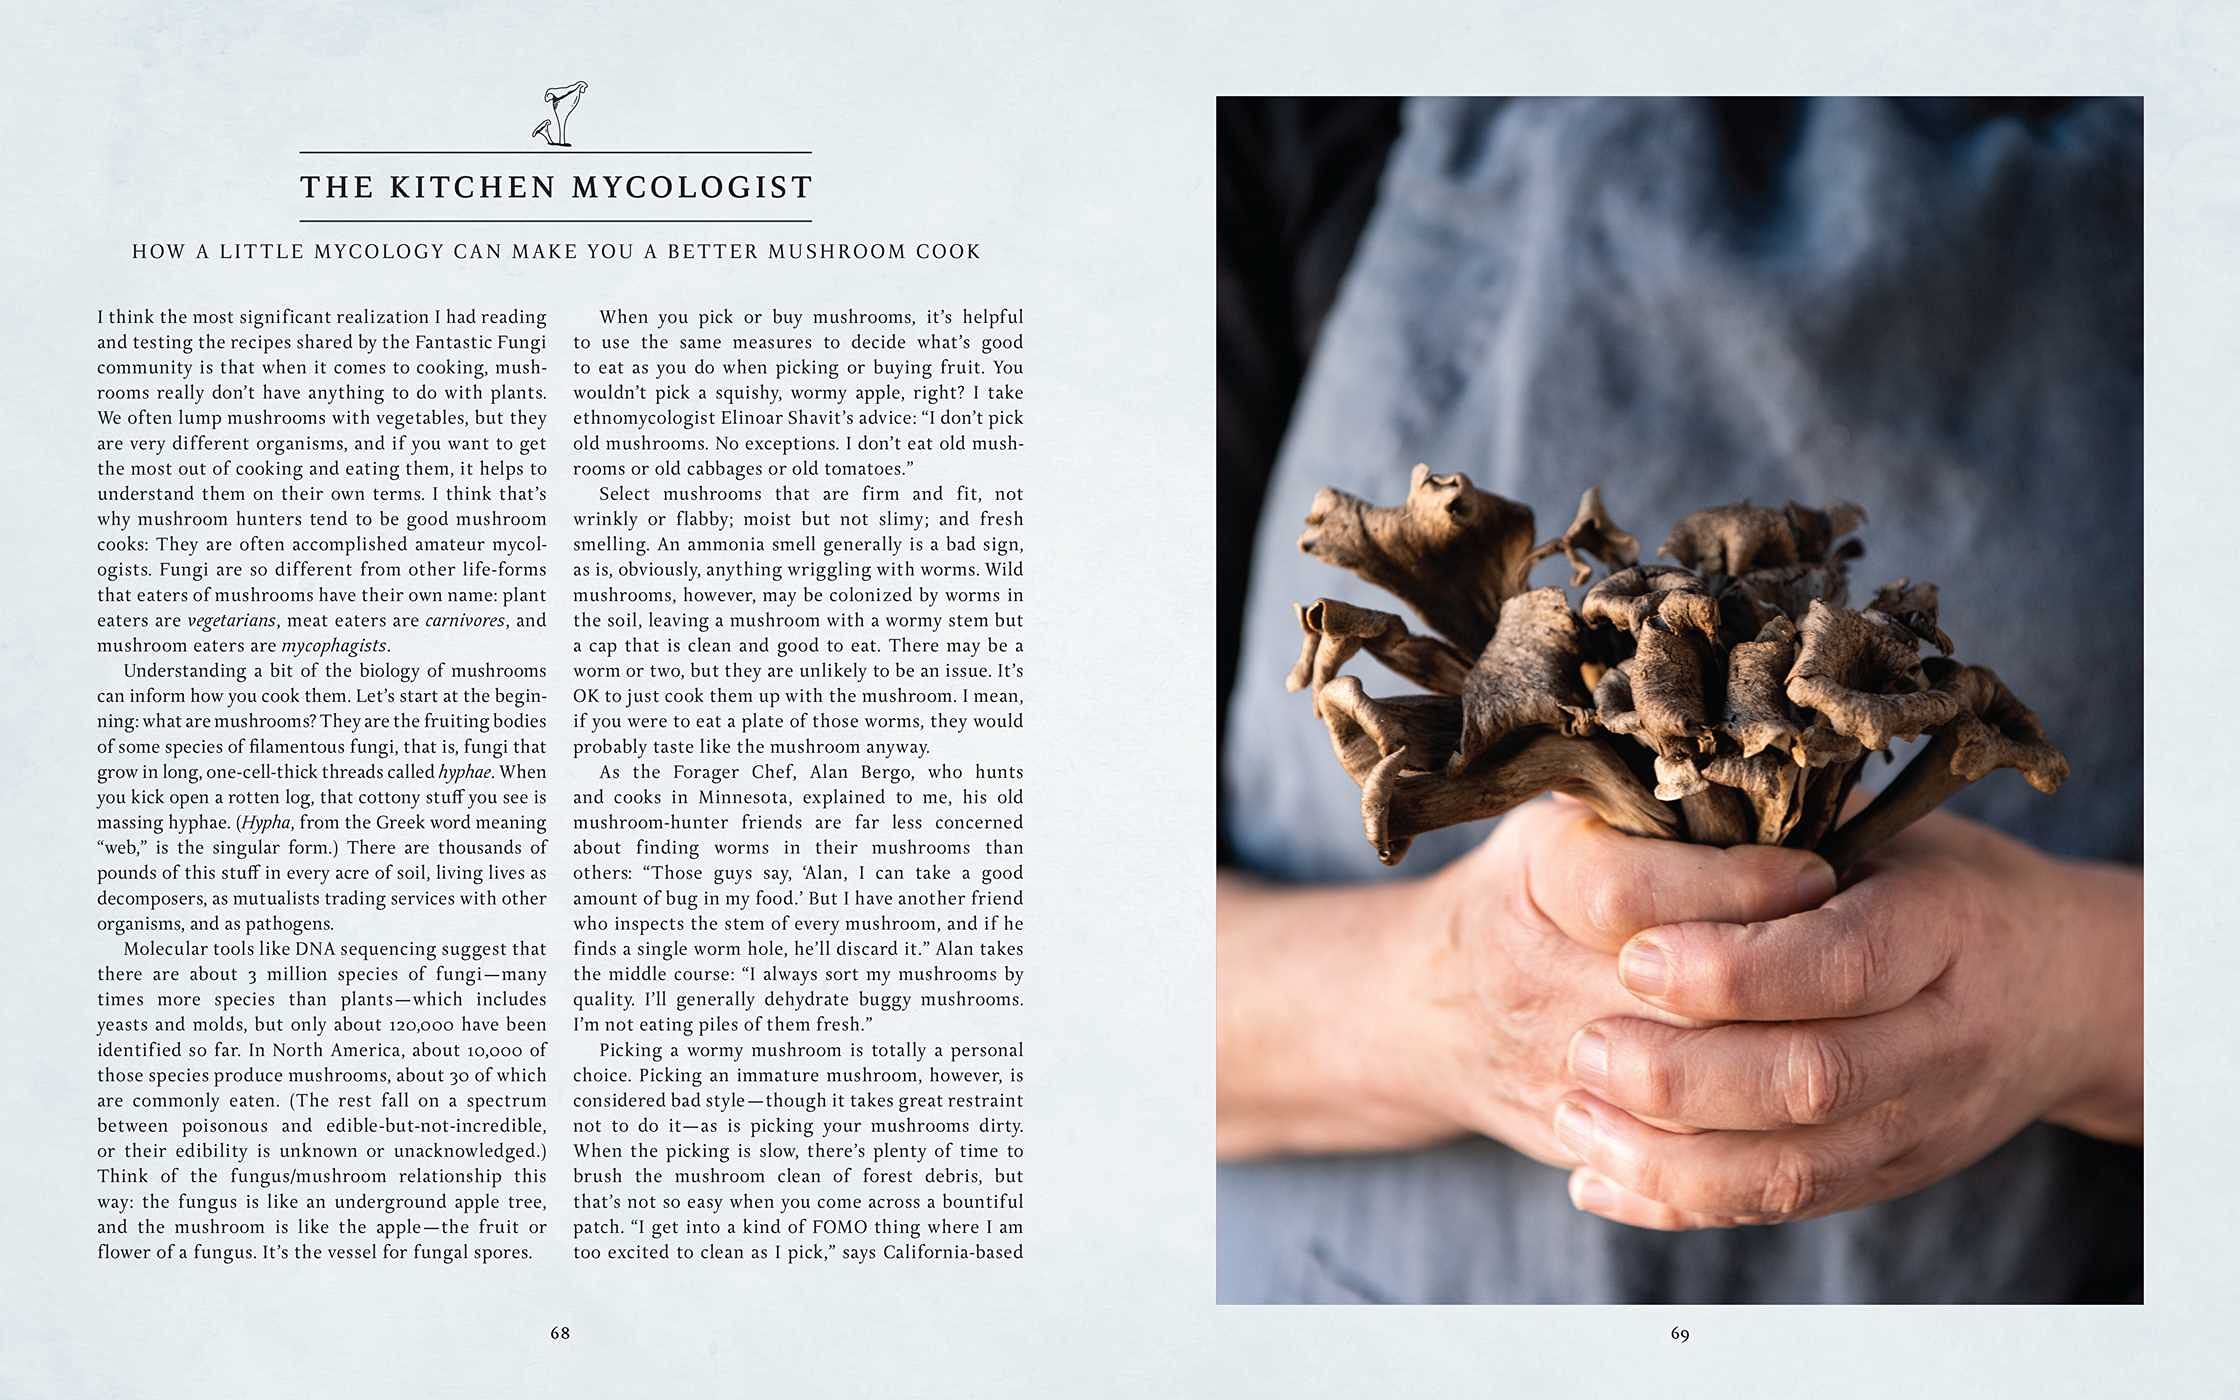 Fantastic Fungi Community Cookbook (Eugenia Bone)